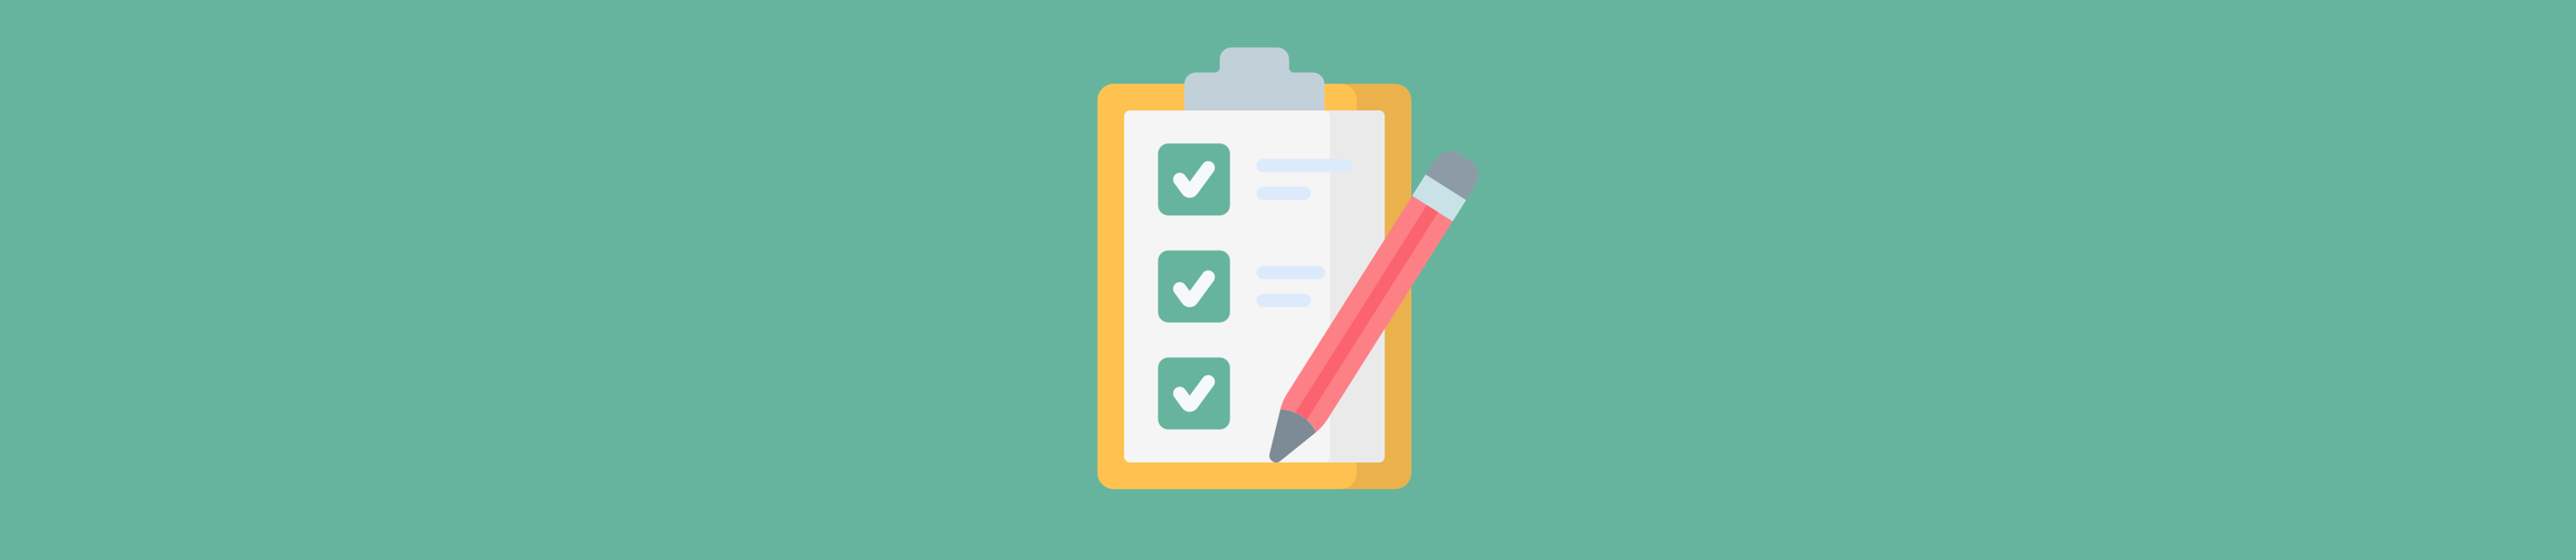 Use um criador de checklists para suas tarefas repetitivas